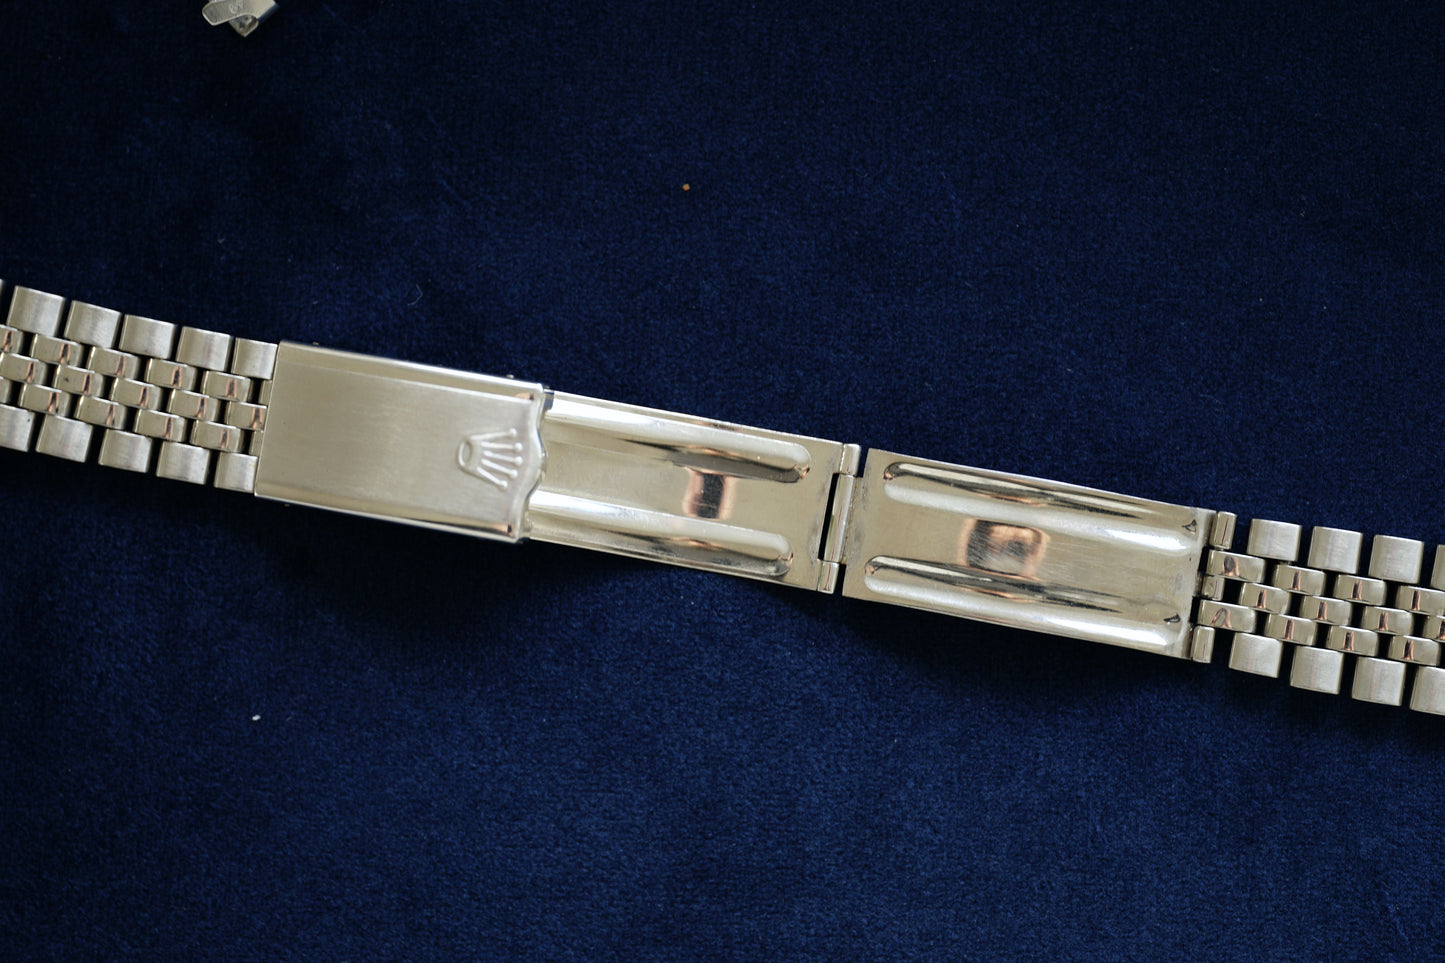 Rolex "Hecho in Mexico" Jubilee Steel Bracelet 6311including 49 Endlinks